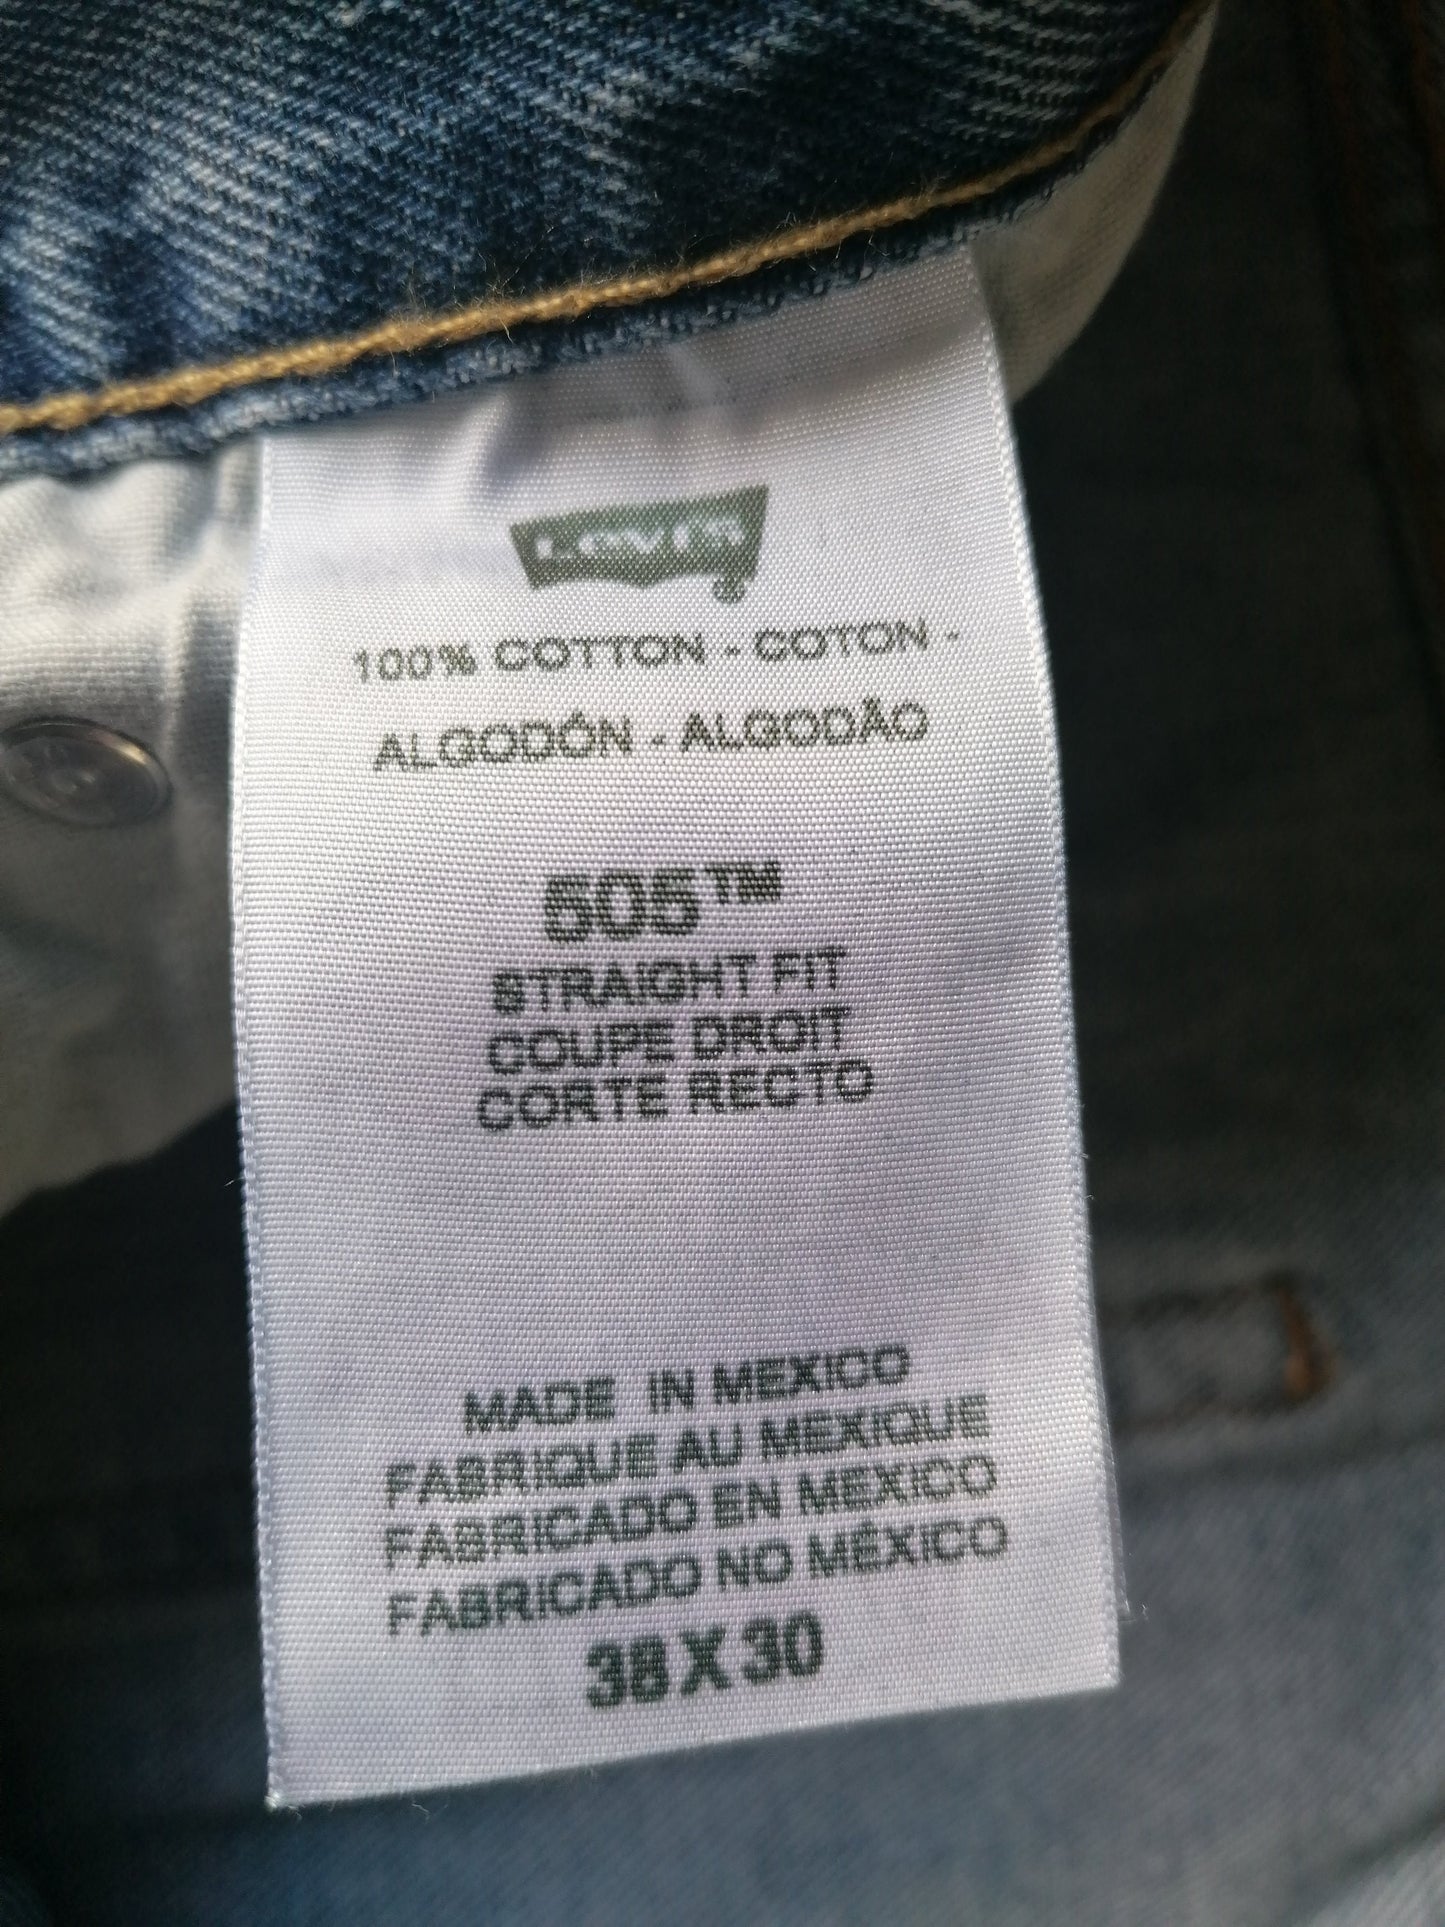 Los 505 jeans de Levi. Color azul. Tamaño W38 - L30. Corte recto.